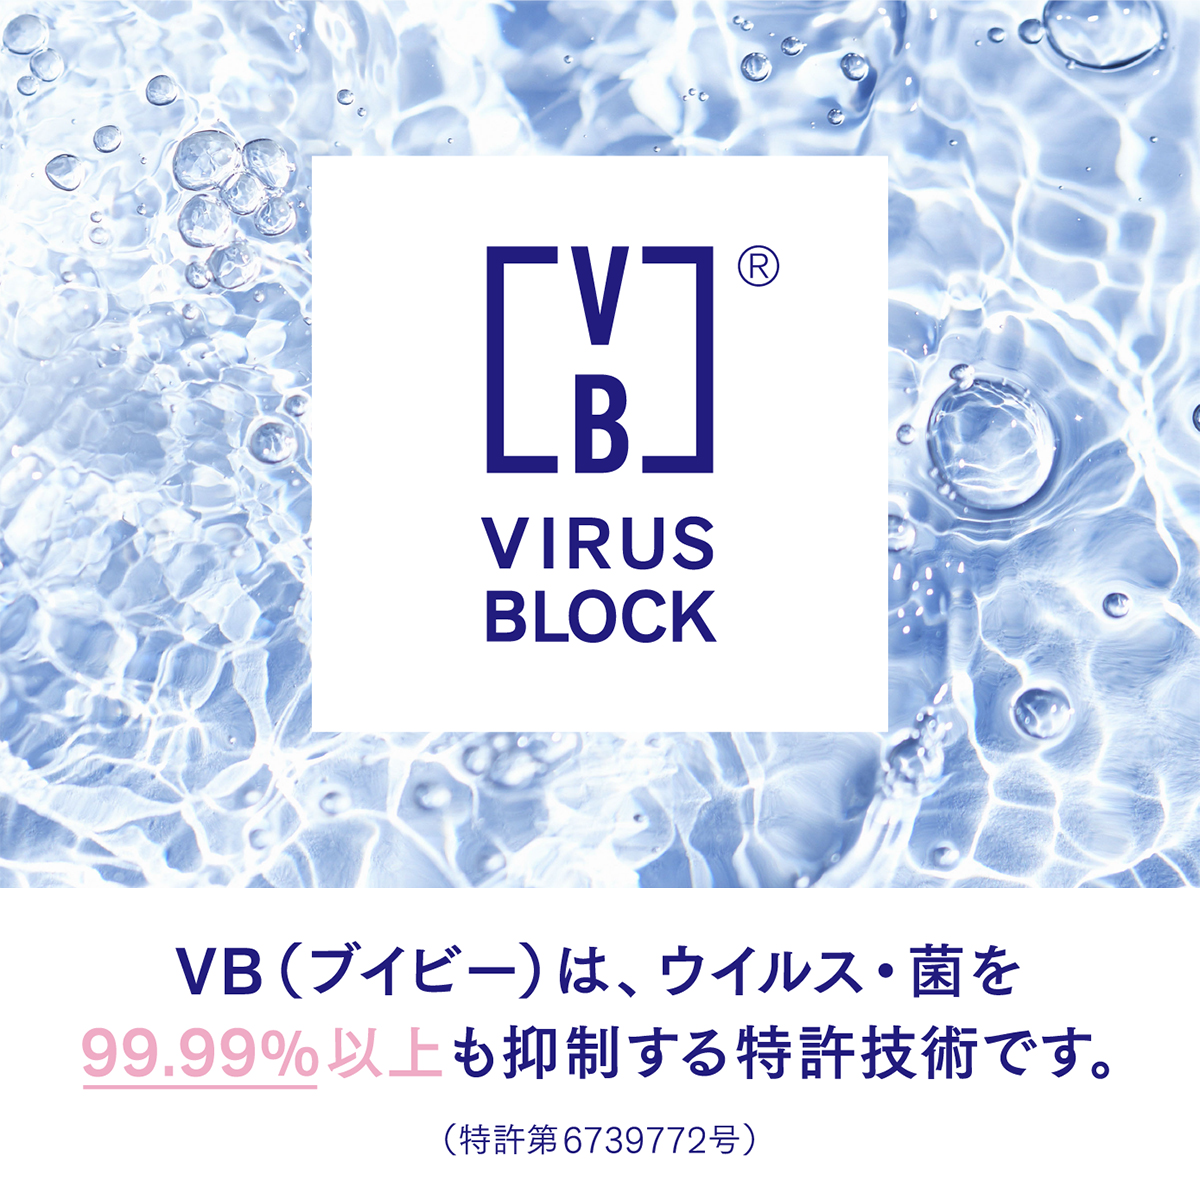 VBは、ウイルス・菌の働きを99.99％以上も抑制する特許技術です。（特許5314219号）